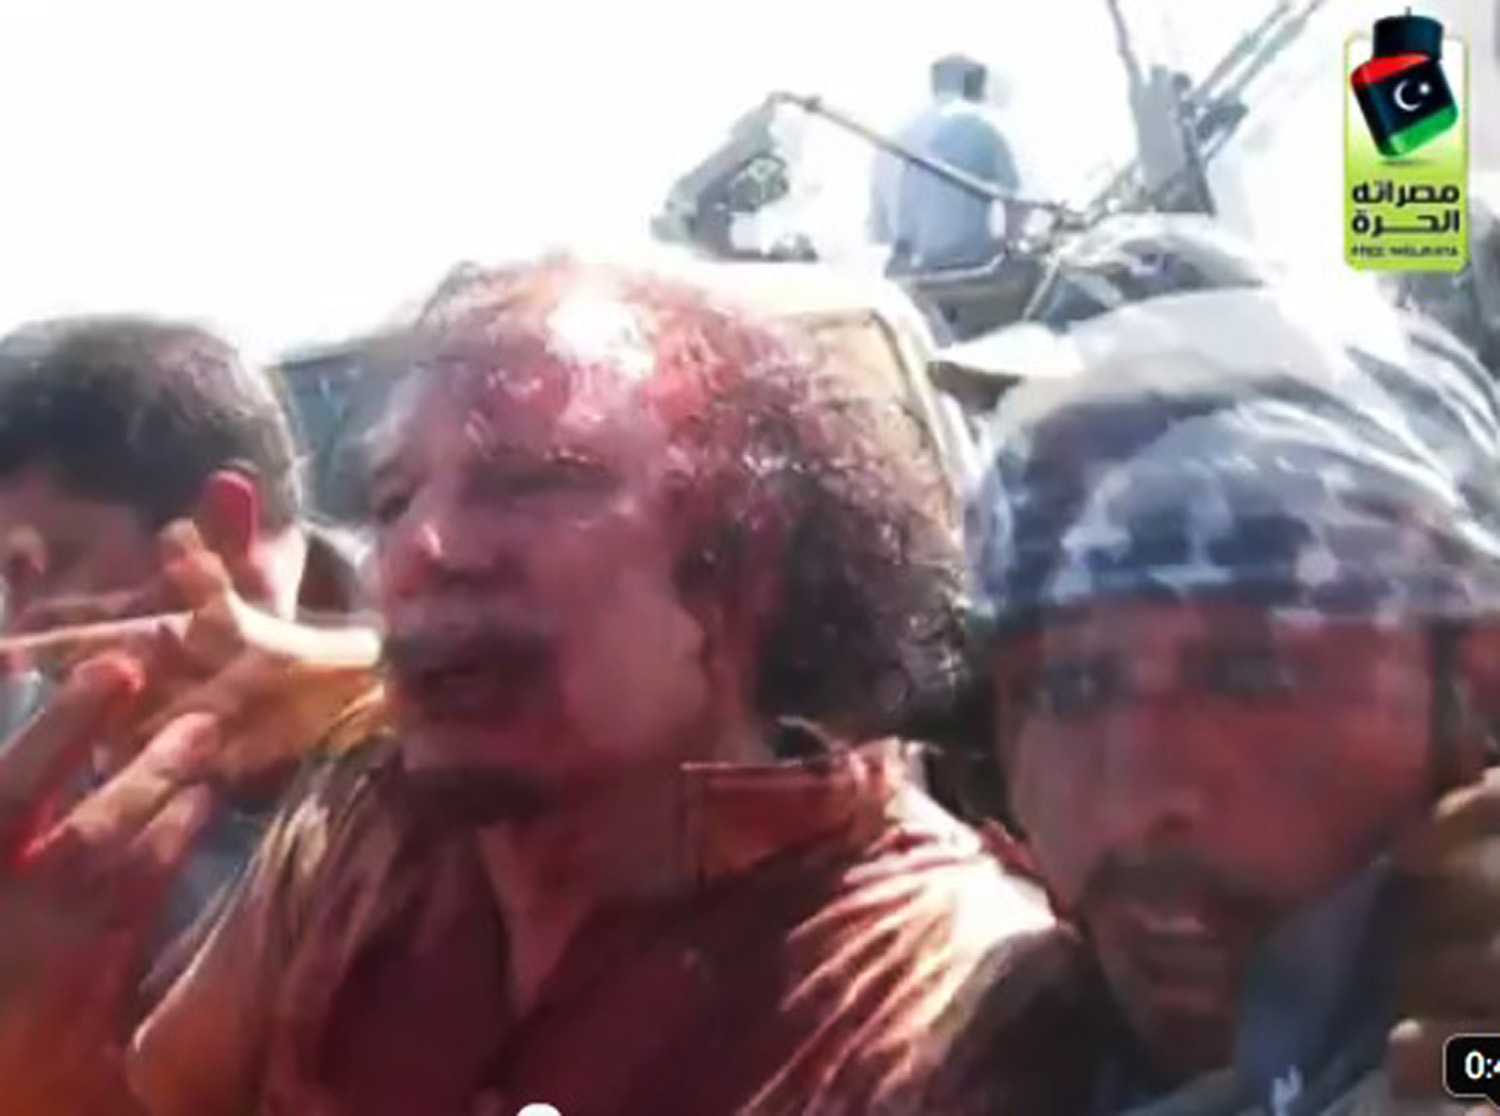 Stillbild från ett videoklipp innan Khaddafi skulle föras till sjukhuset.